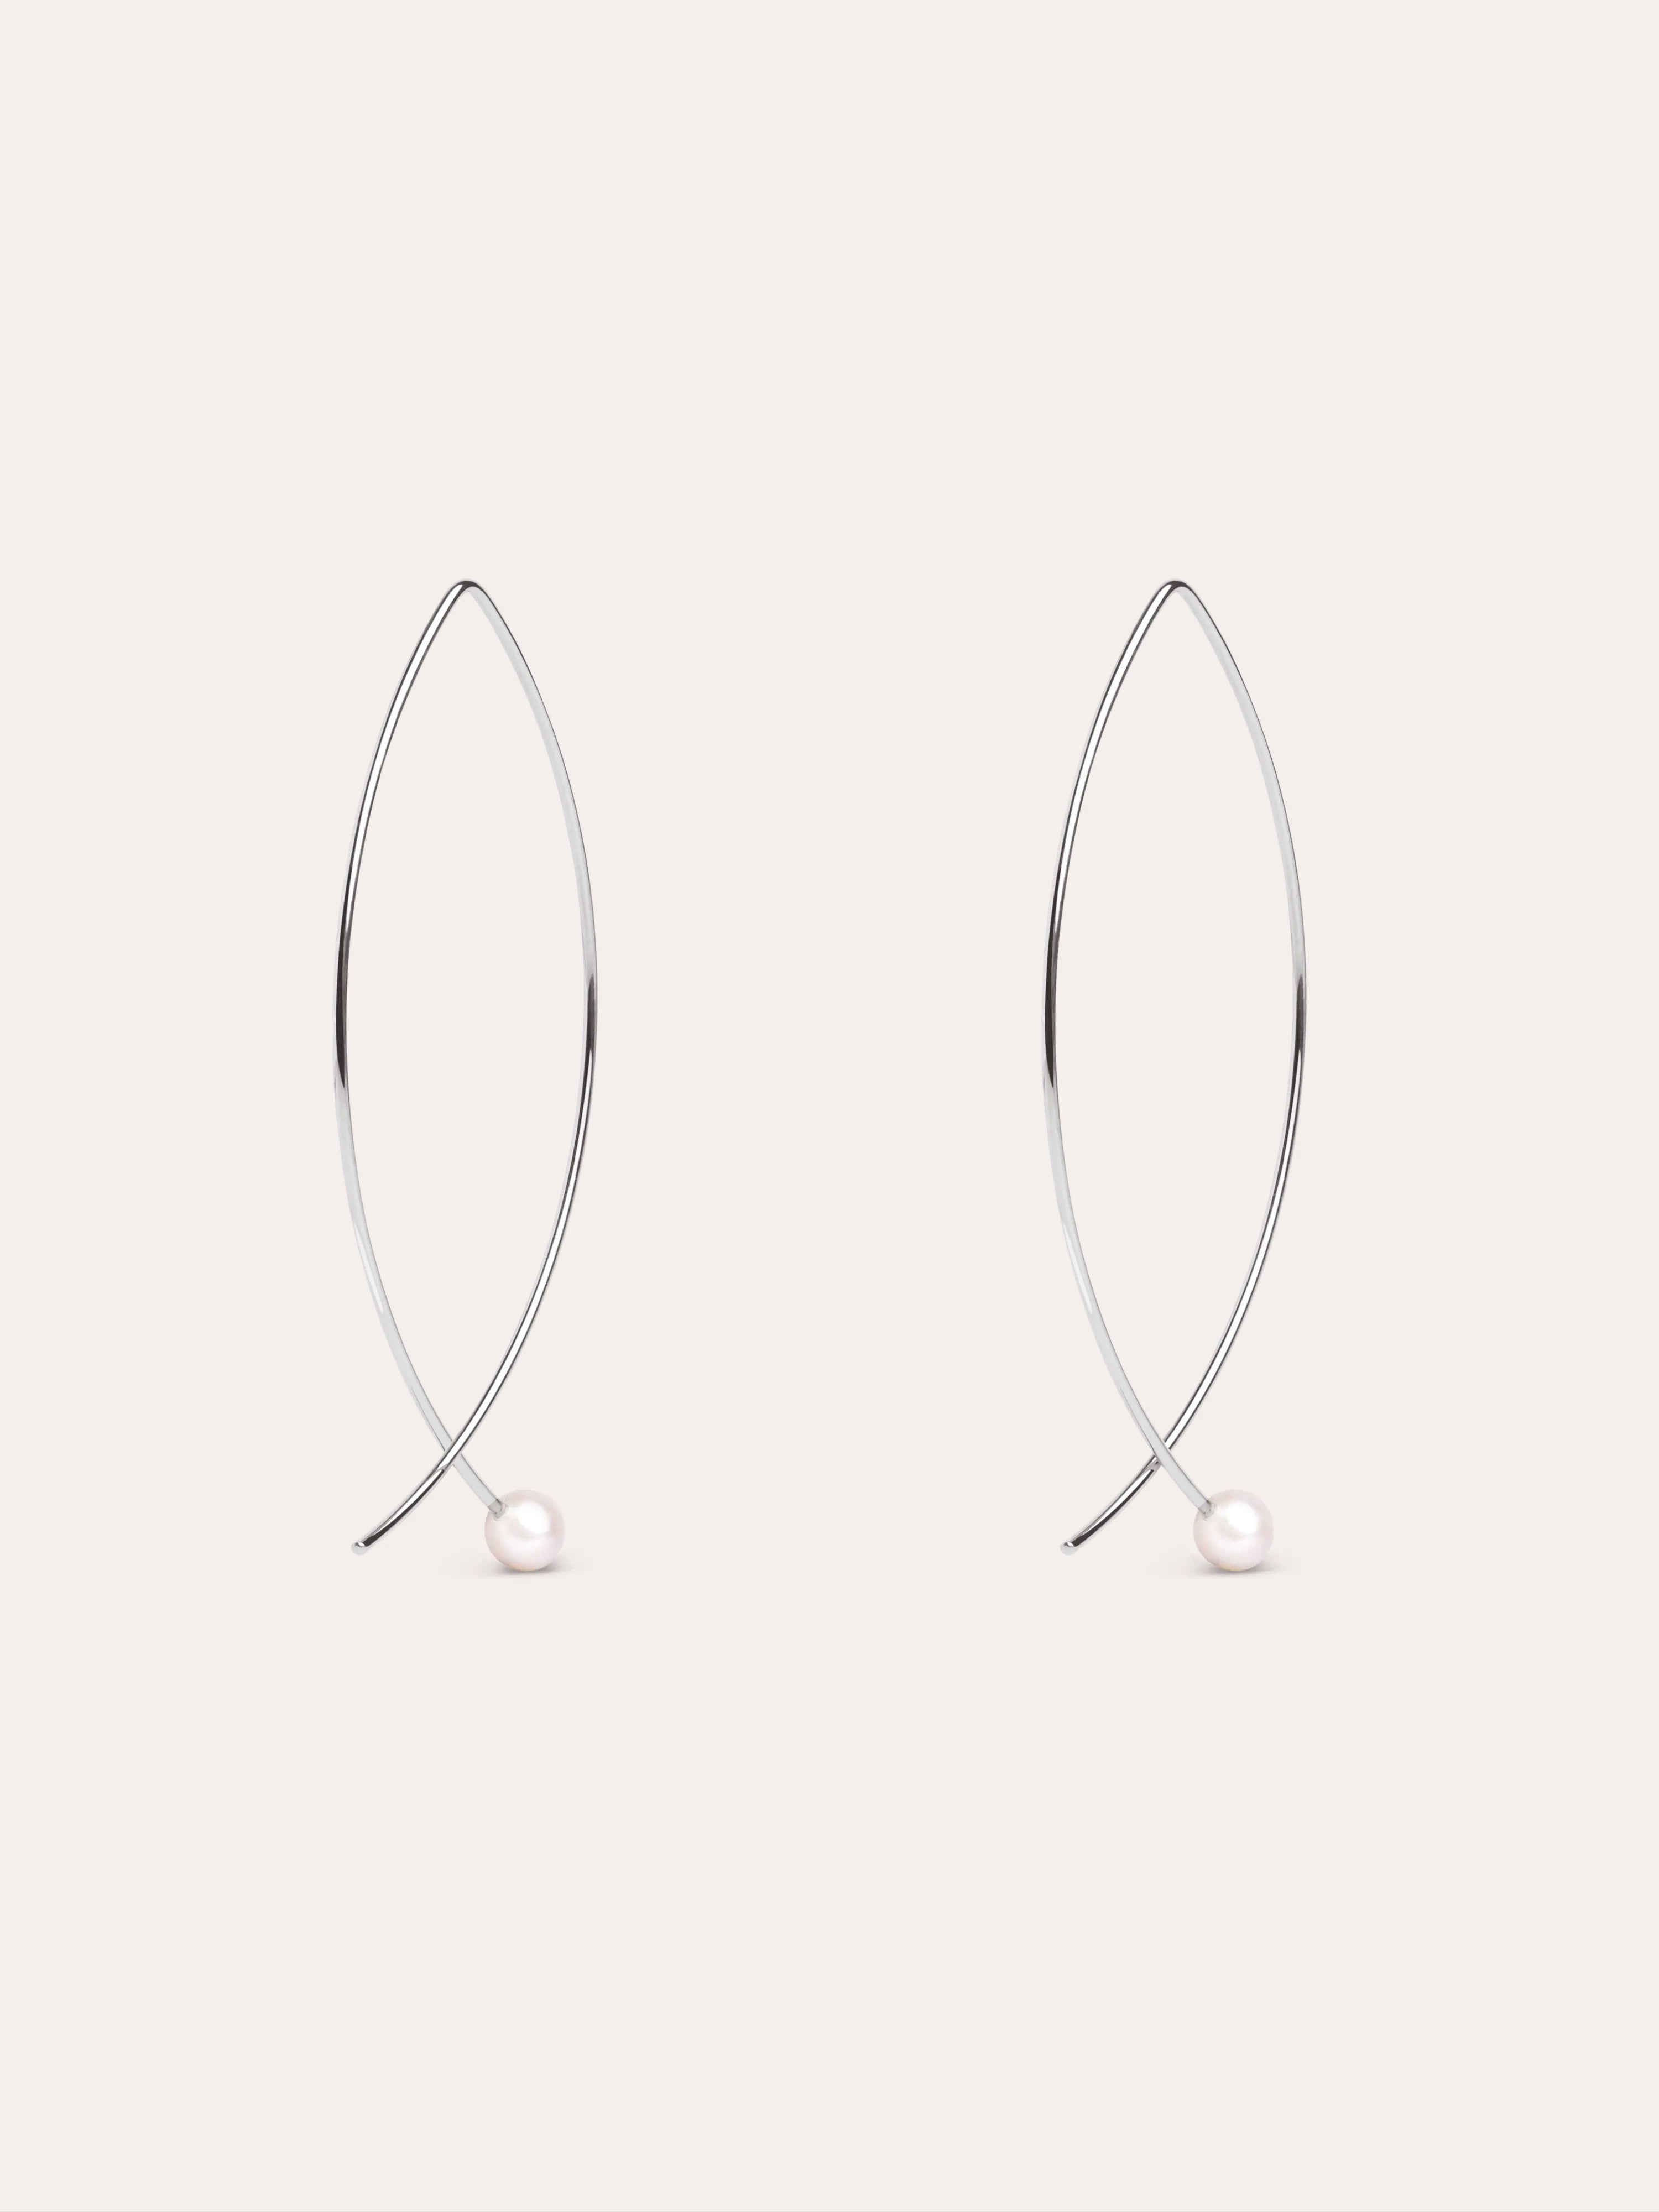 Arch Pearl Silver Earrings